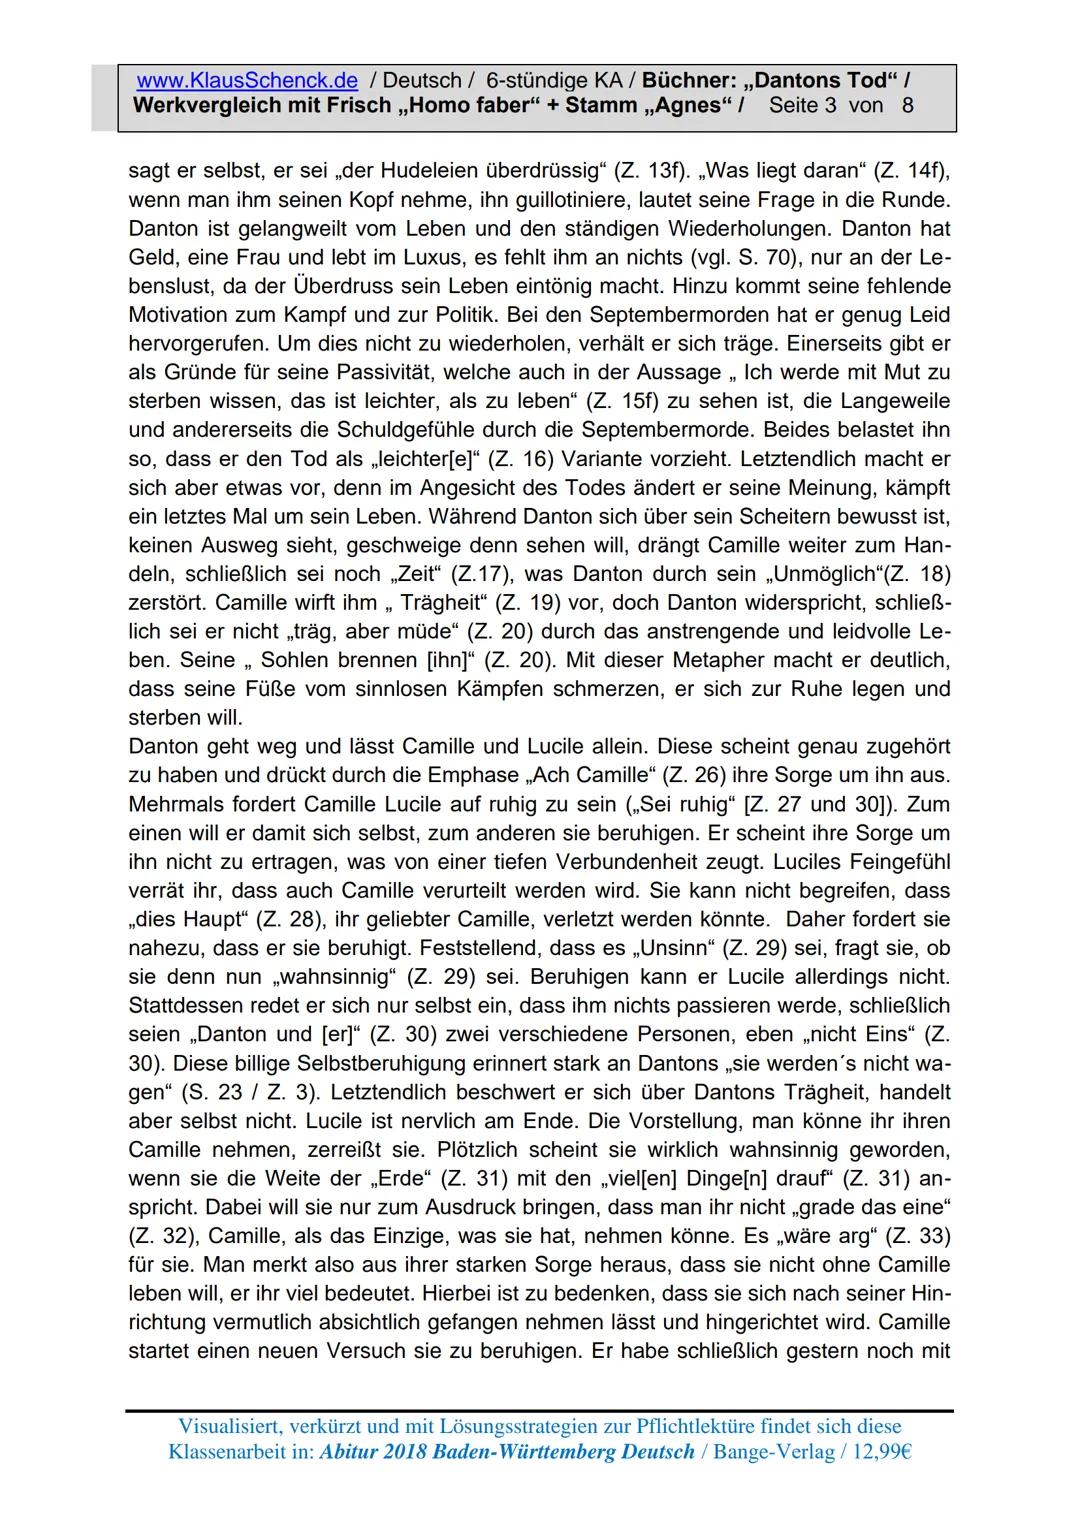 www.KlausSchenck.de / Deutsch / 6-stündige KA / Büchner: „Dantons Tod" /
Werkvergleich mit Frisch ,,Homo faber" + Stamm ,,Agnes" / Seite 1 v